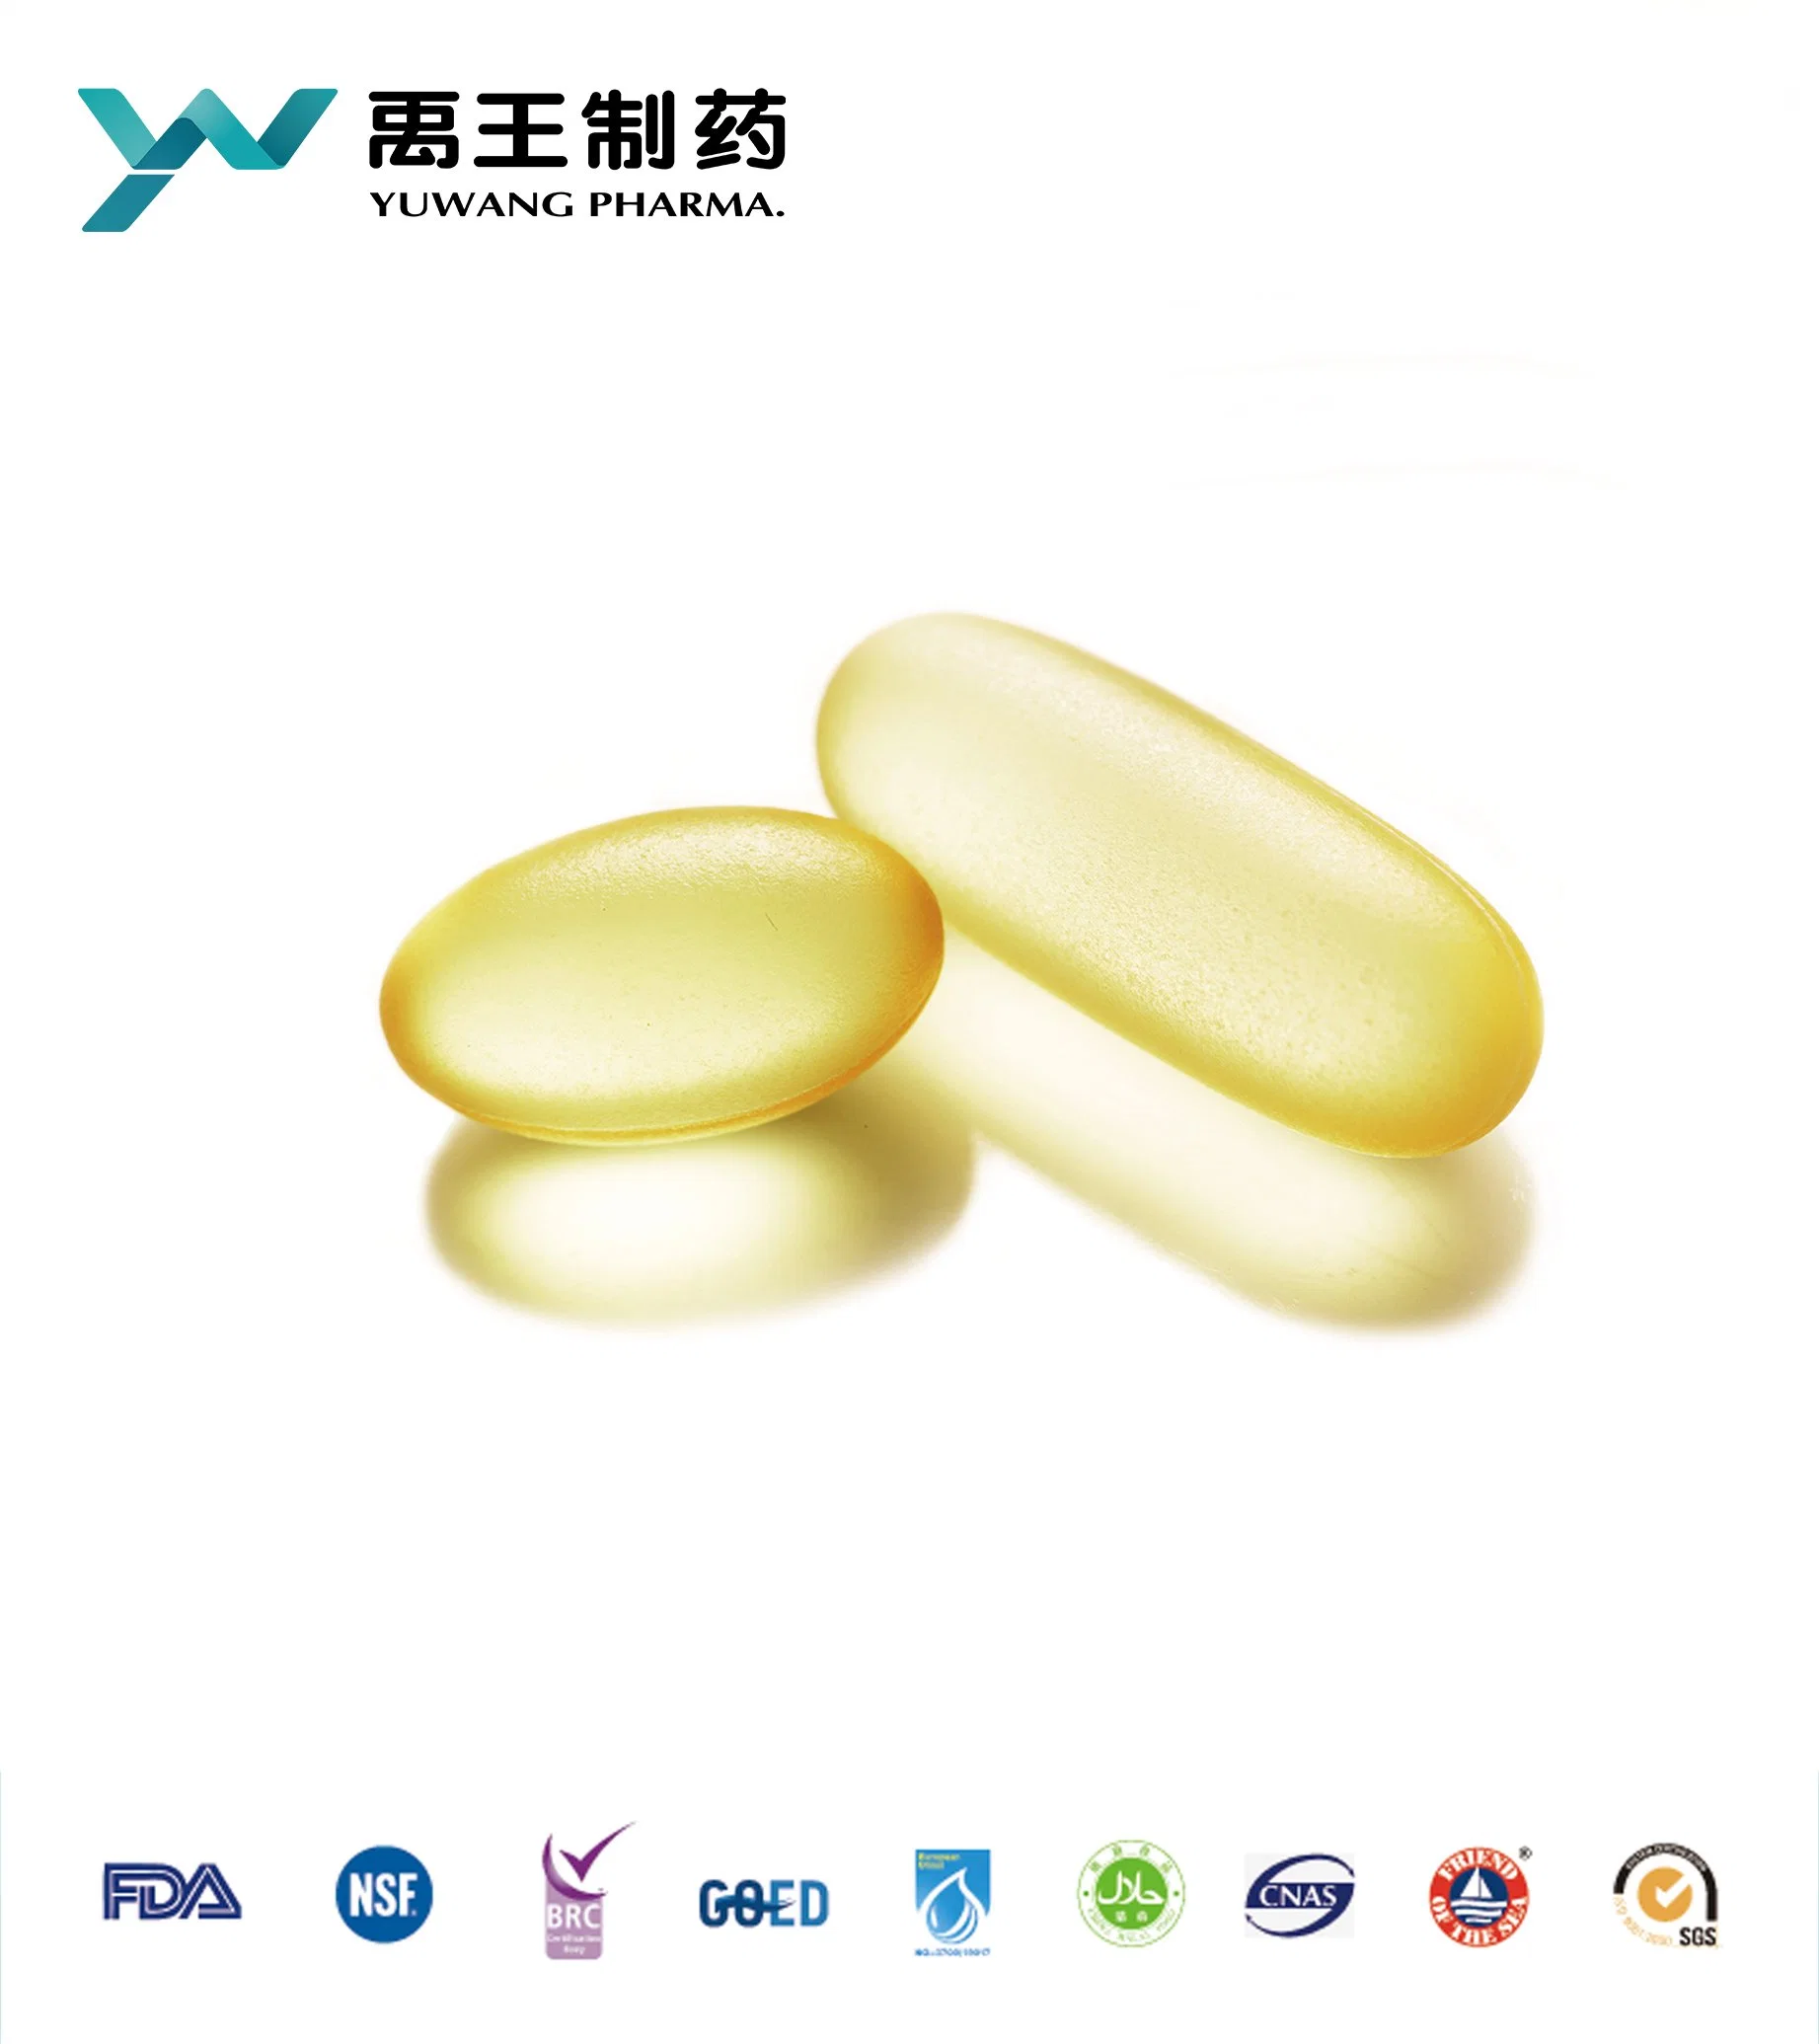 GMP сертифицированных продуктов для сферы здравоохранения Yuwang глубоководных рыб масло Softgel Омега 3 капсула